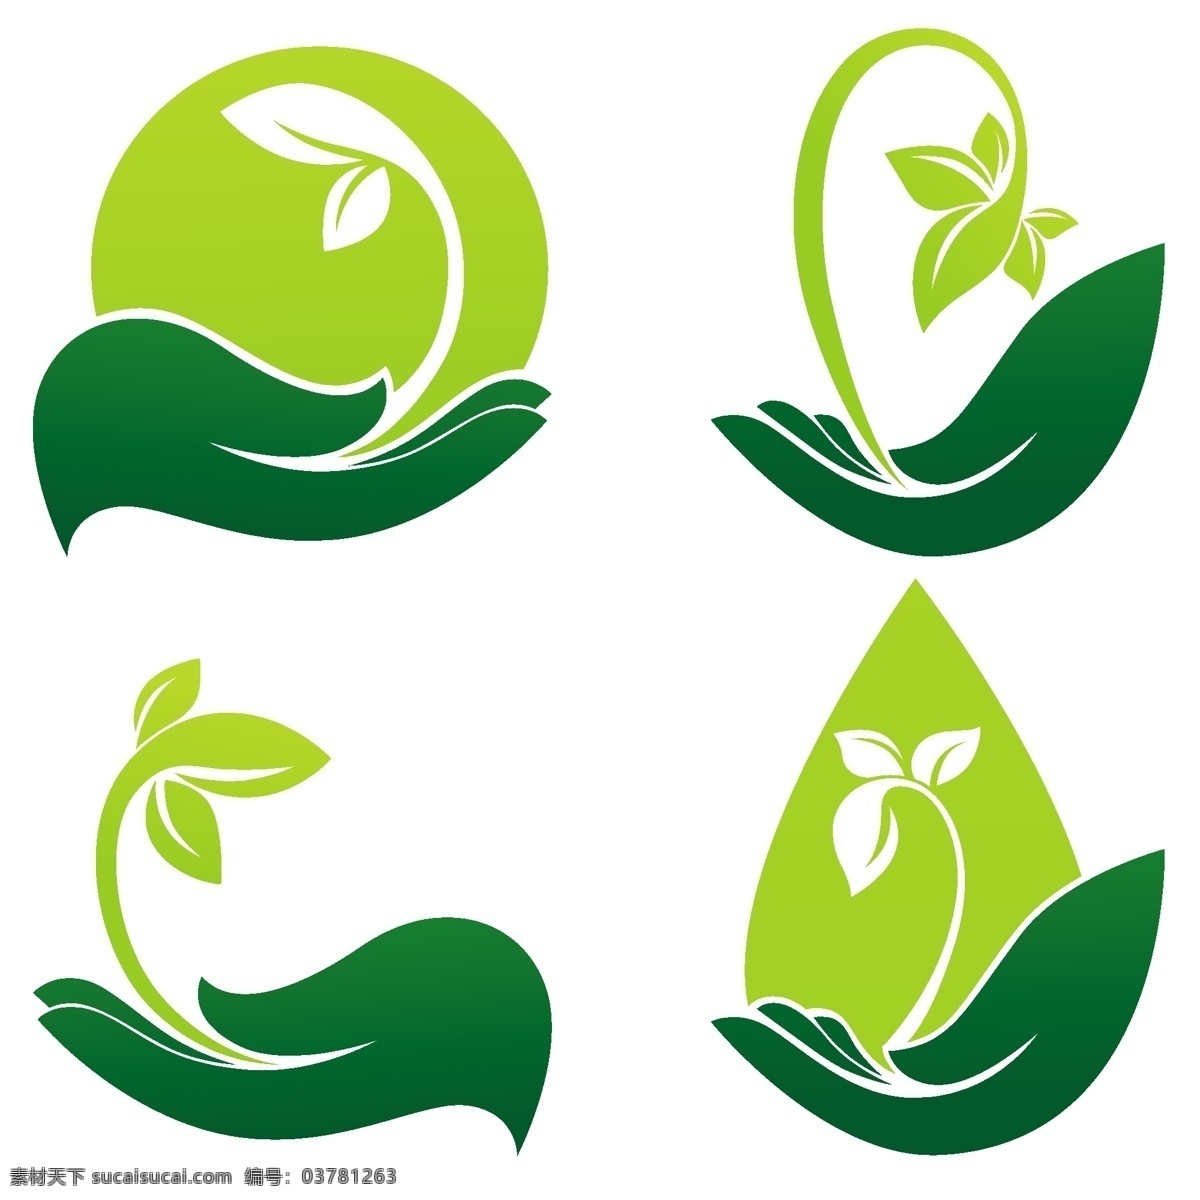 綠 色 標 章 永續 環保 生長 綠能 ui设计 图标设计